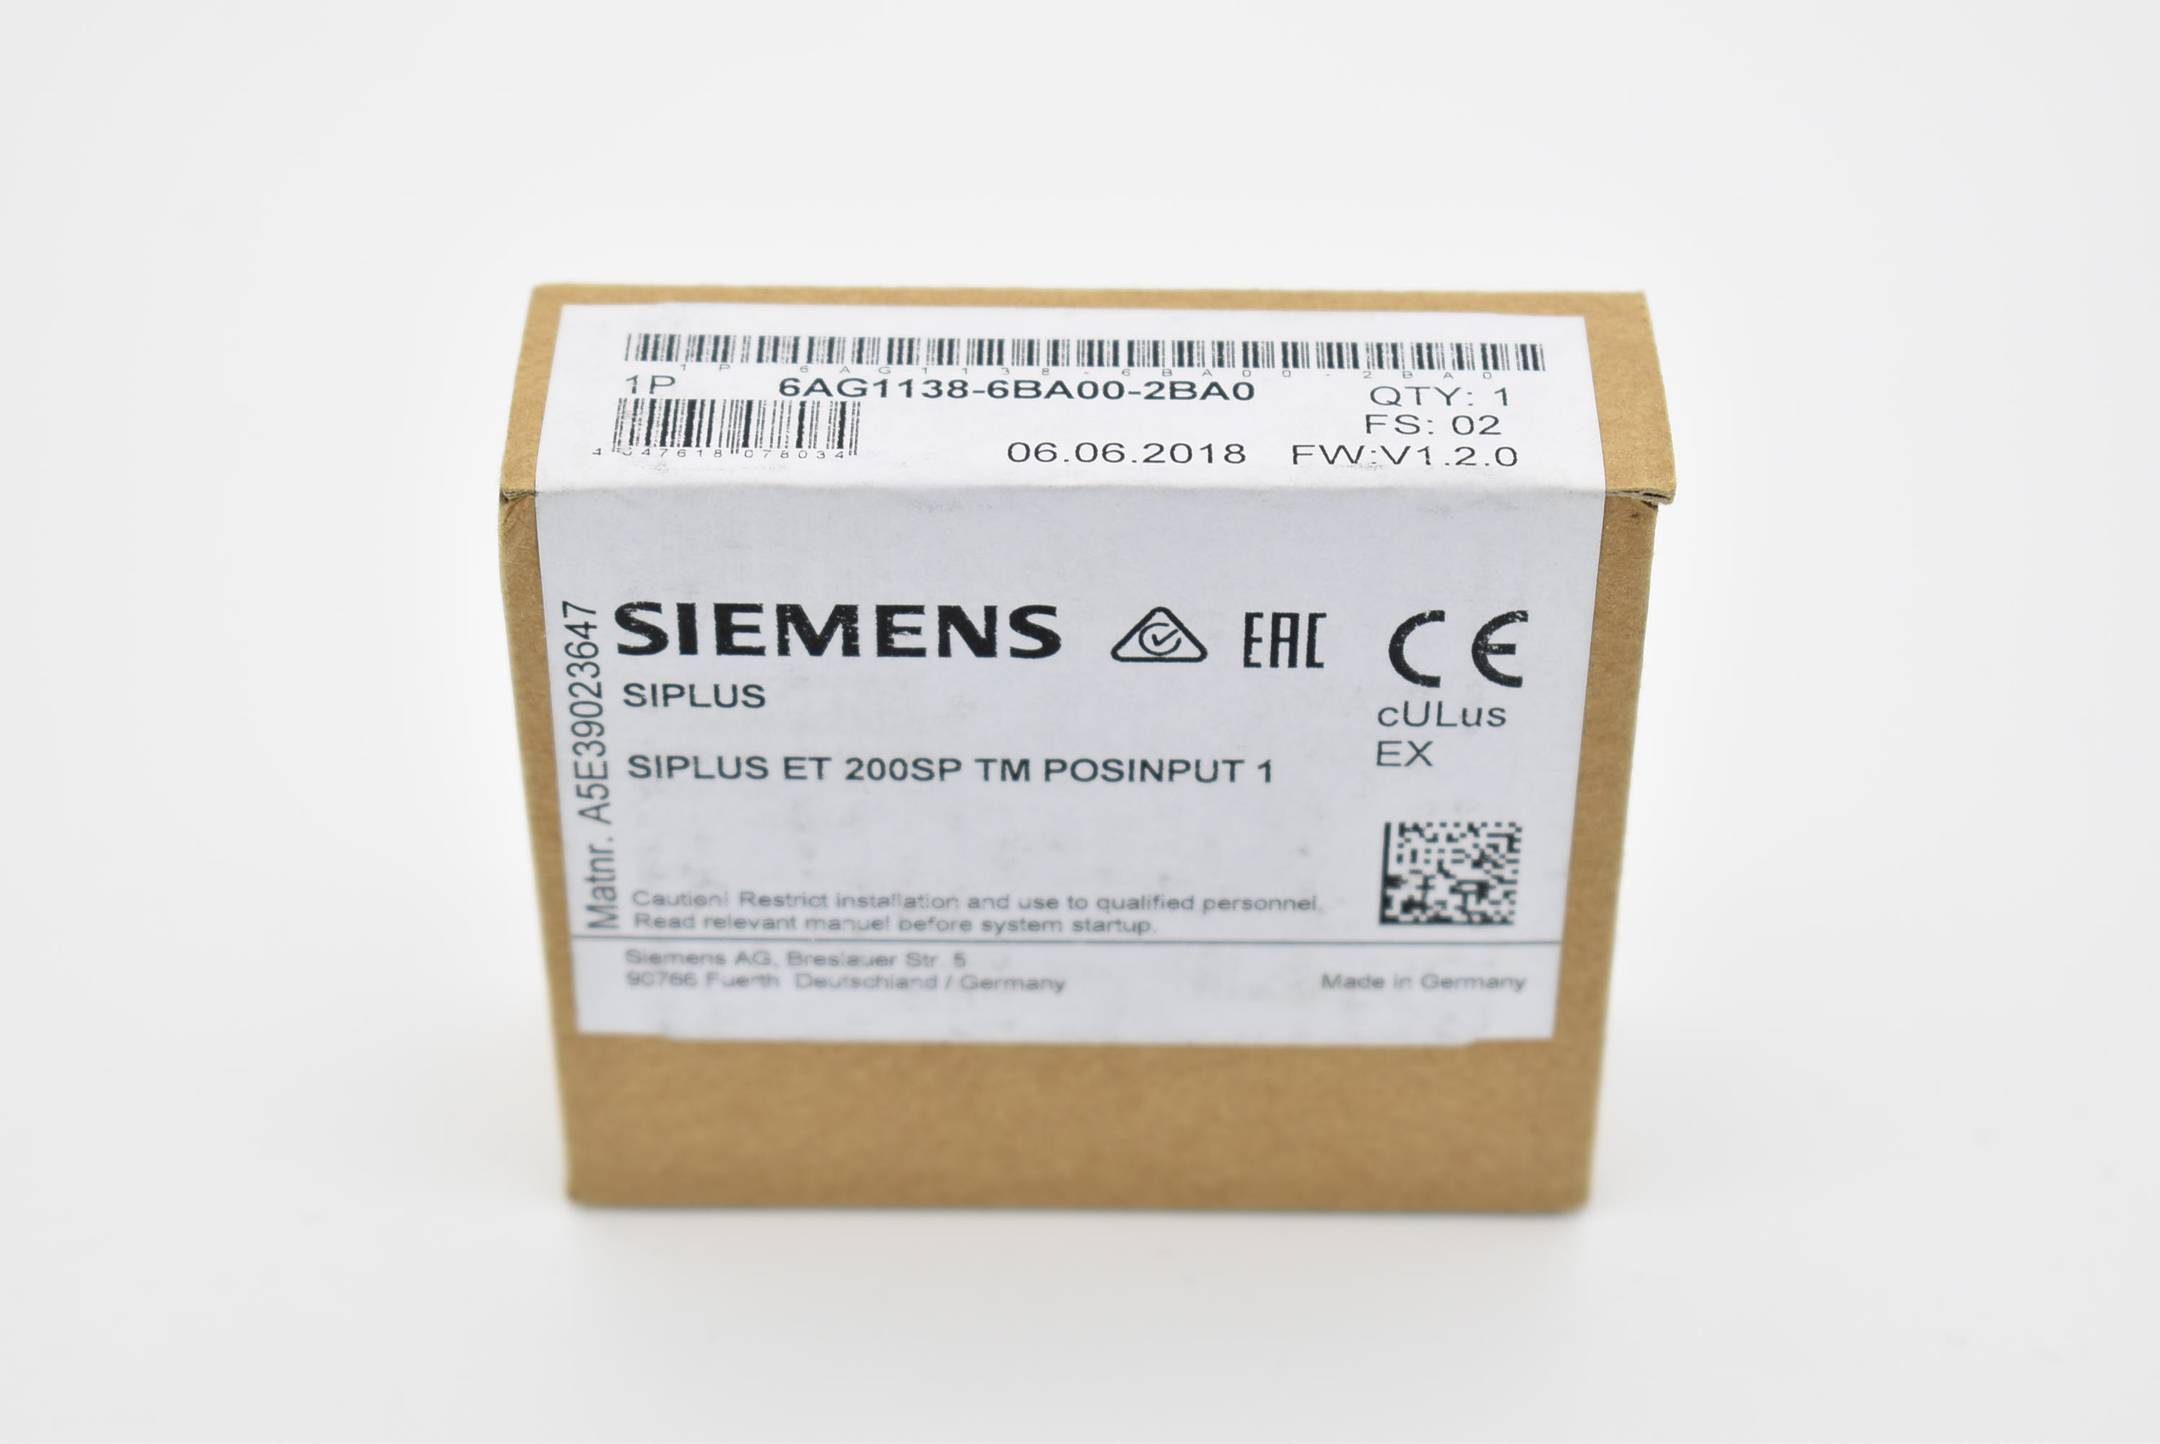 Siemens siplus ET200SP 6AG1138-6BA00-2BA0 ( 6AG1 138-6BA00-2BA0 )